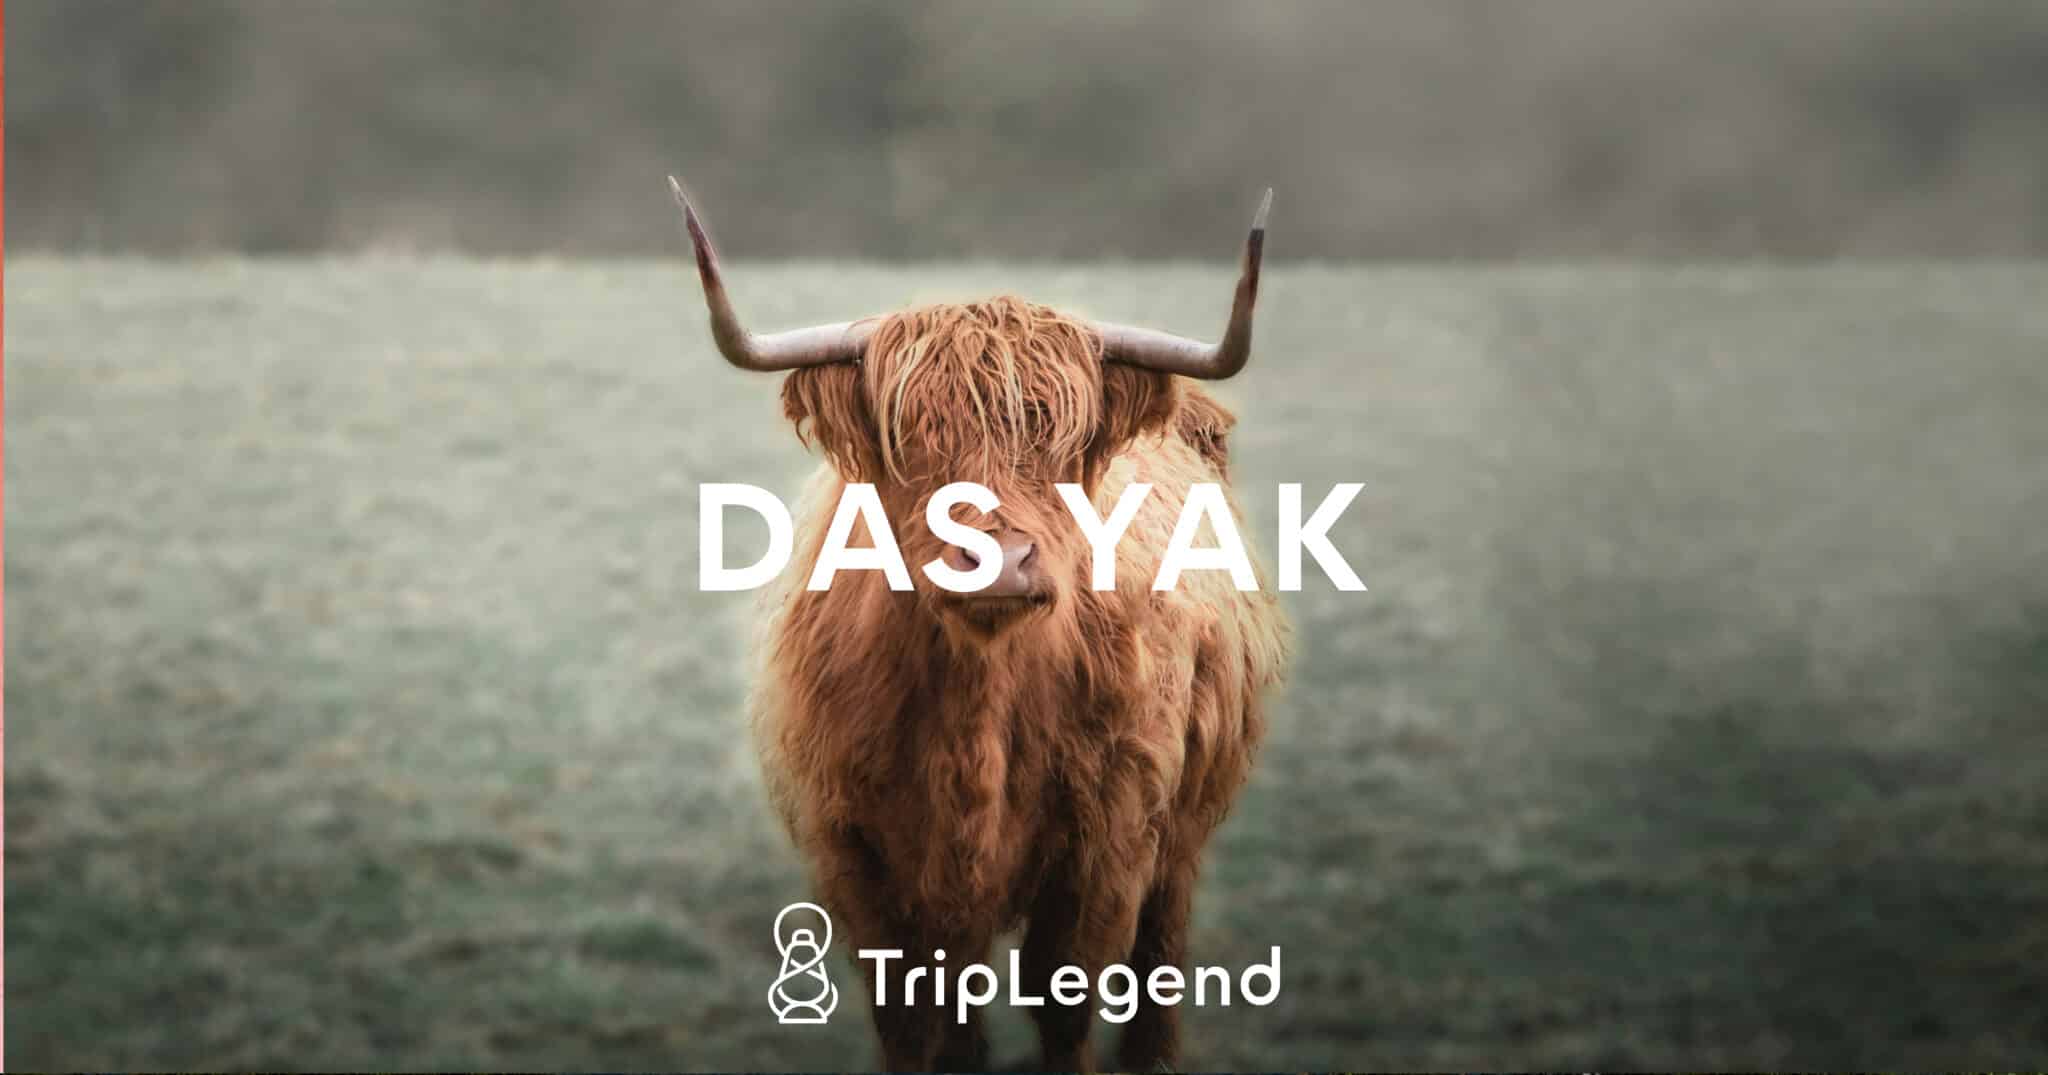 Le yak scaled